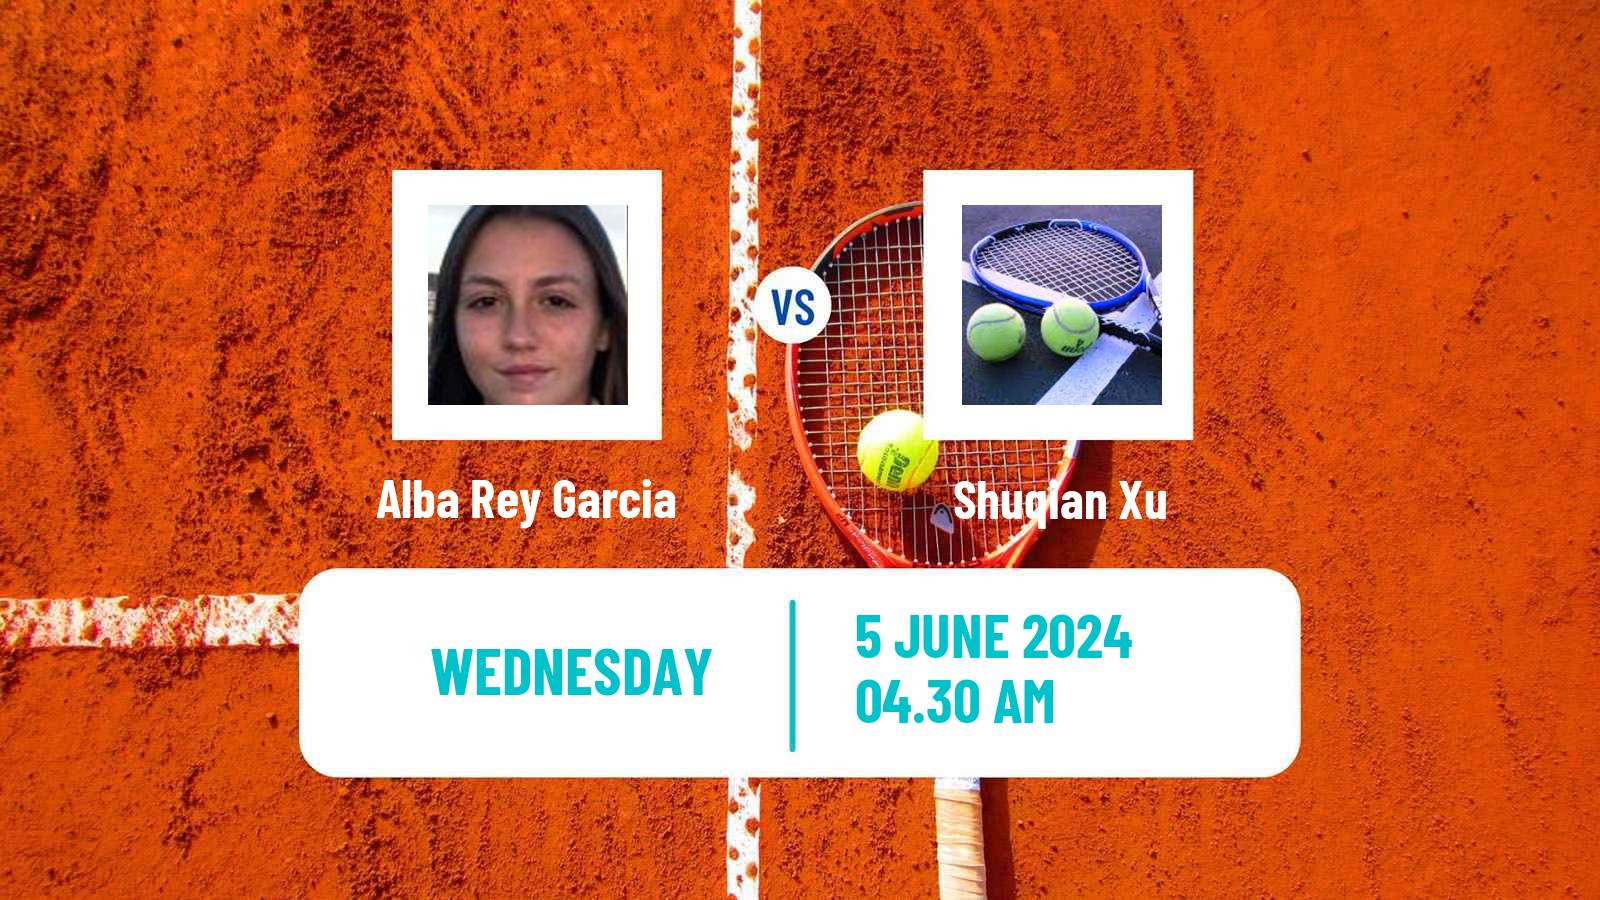 Tennis ITF W15 Madrid Women Alba Rey Garcia - Shuqian Xu